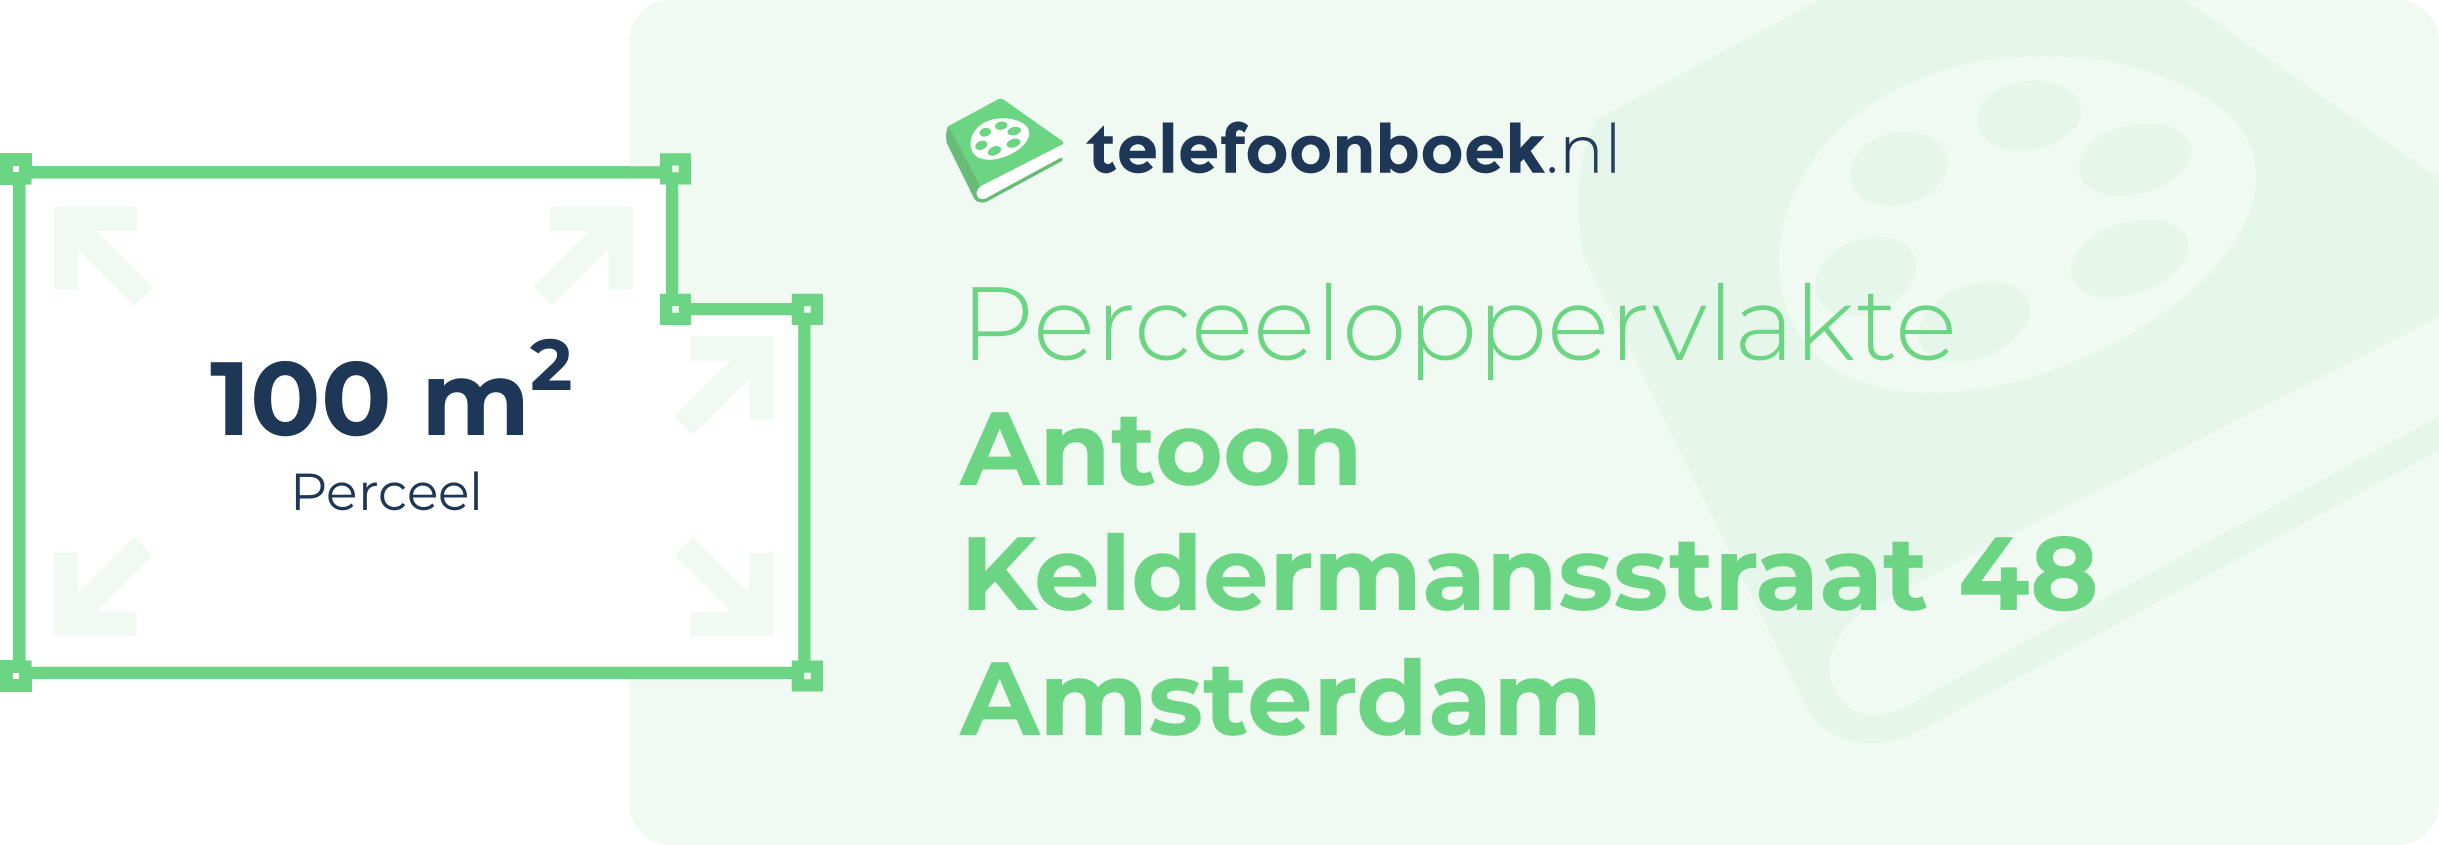 Perceeloppervlakte Antoon Keldermansstraat 48 Amsterdam